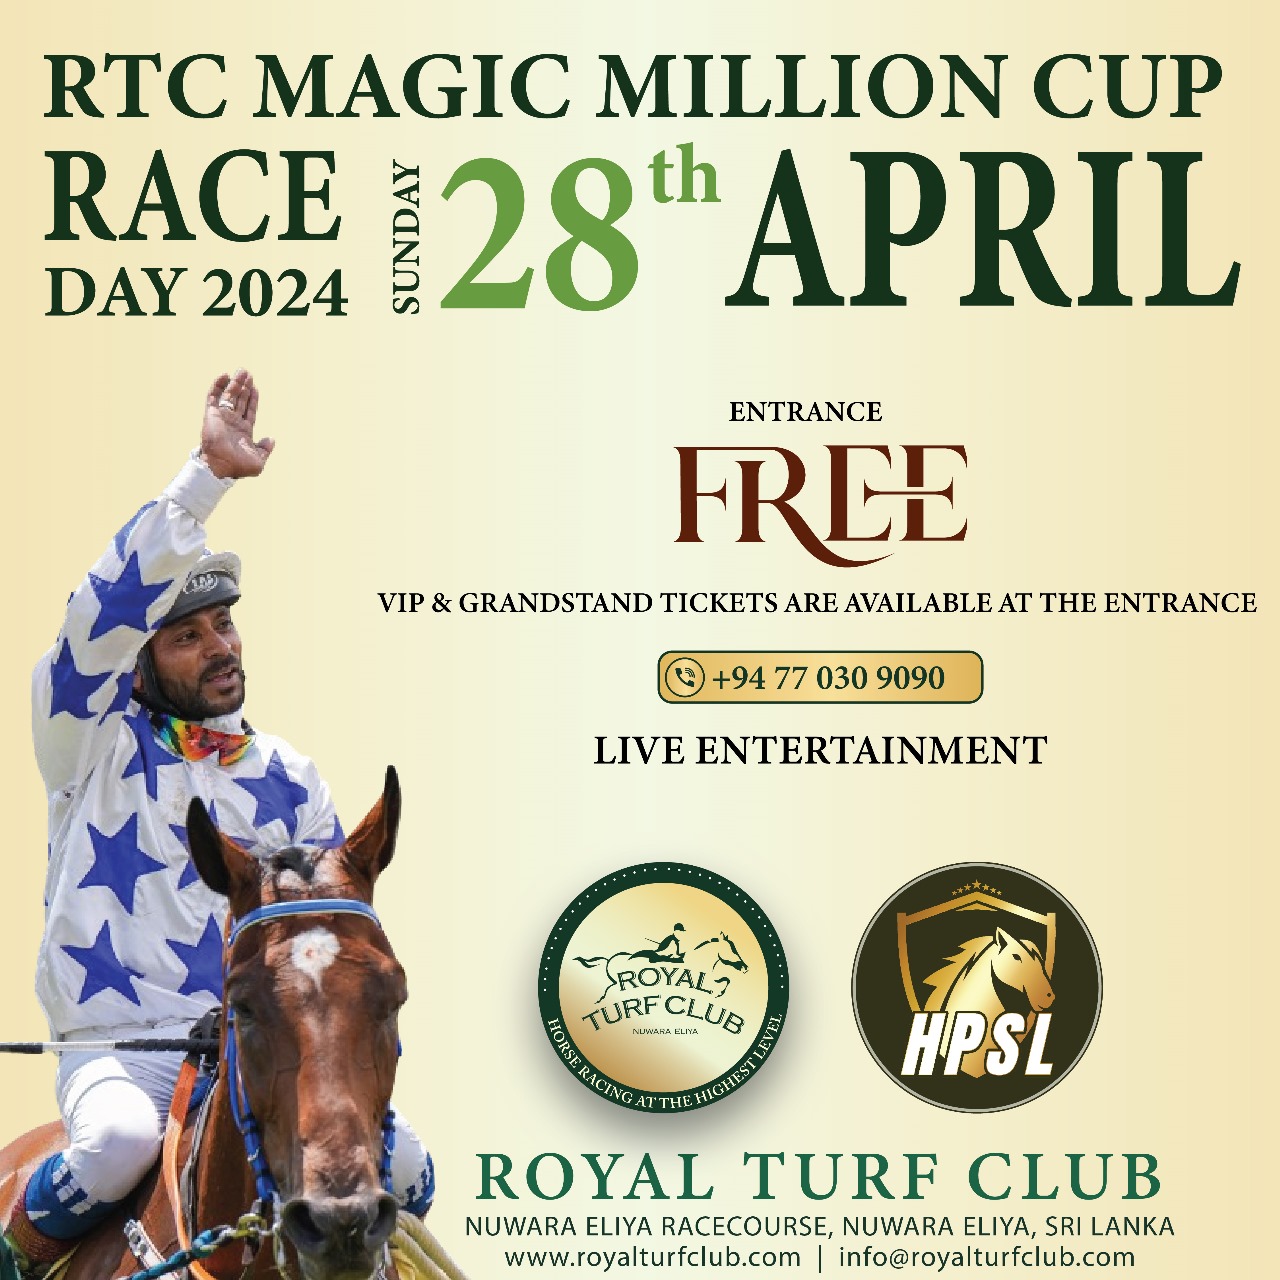 RTC Magic Million Cup promises racing excitement